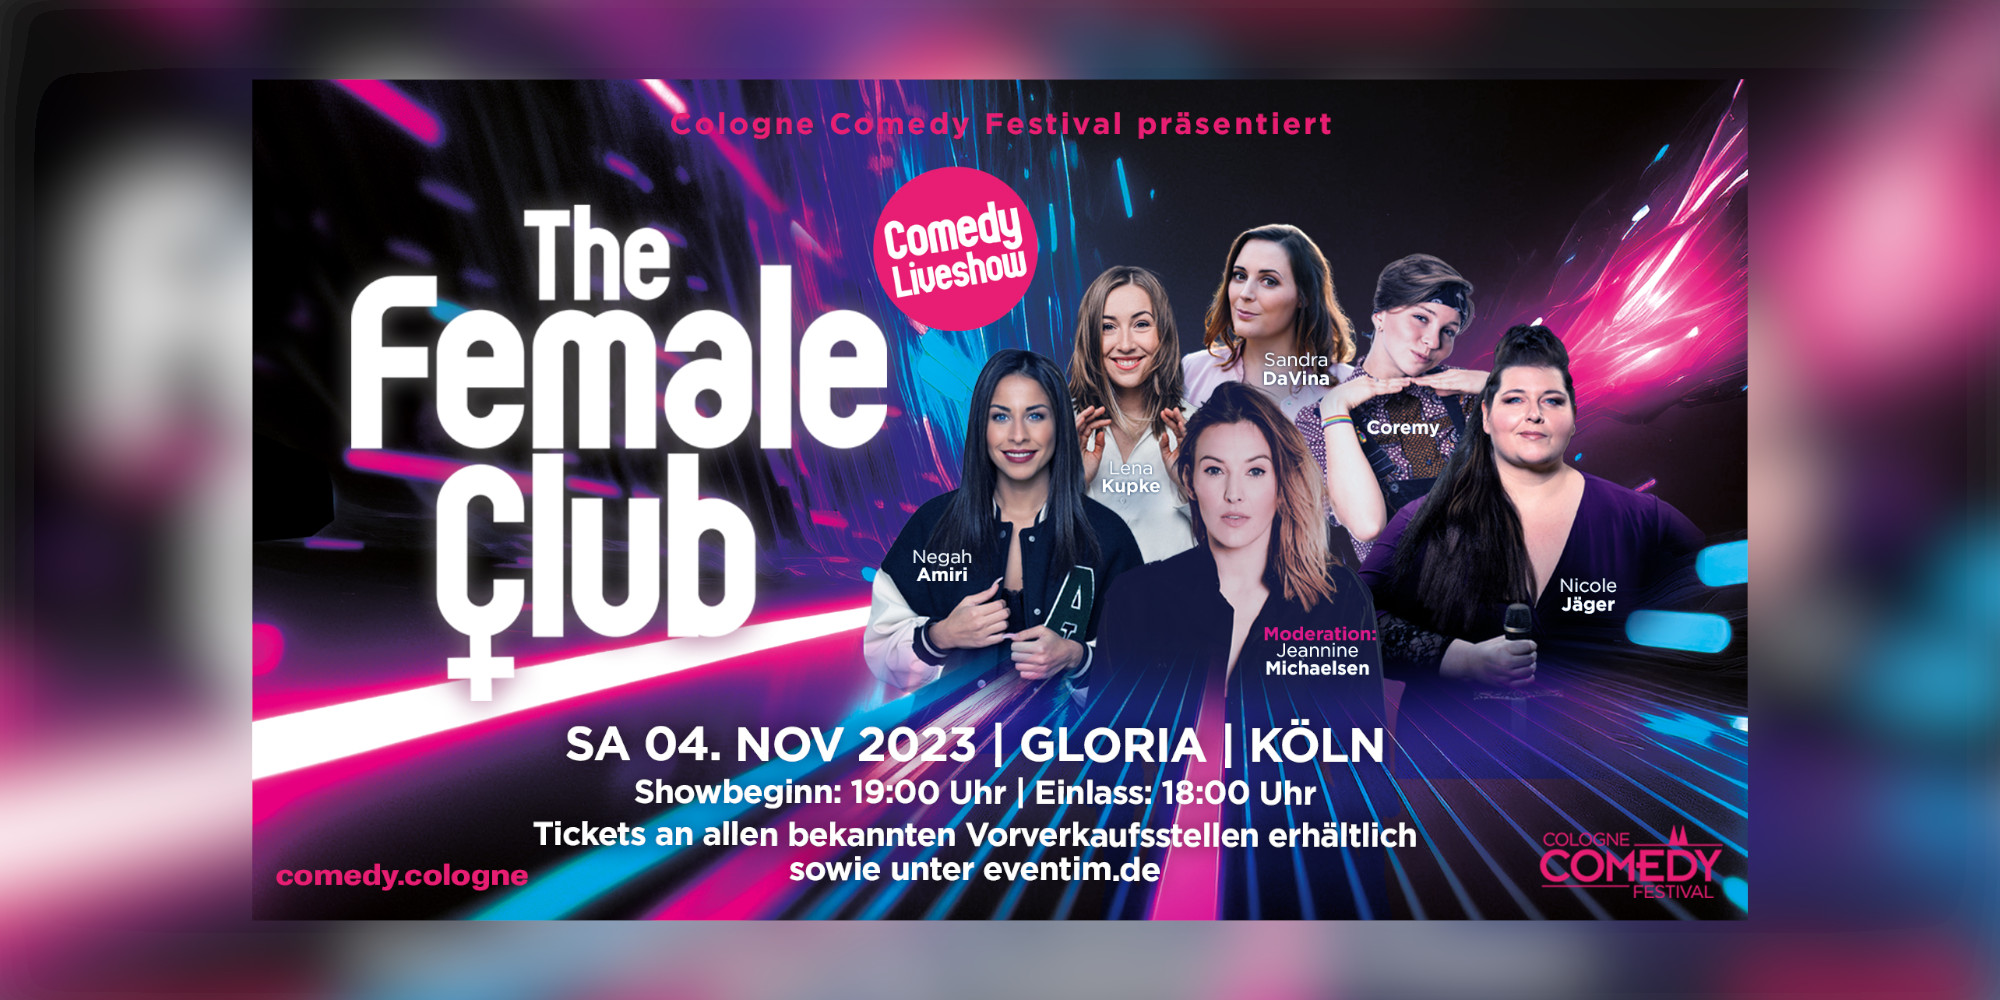 Cologne Comedy Festival prsentiert: THE FEMALE CLUB